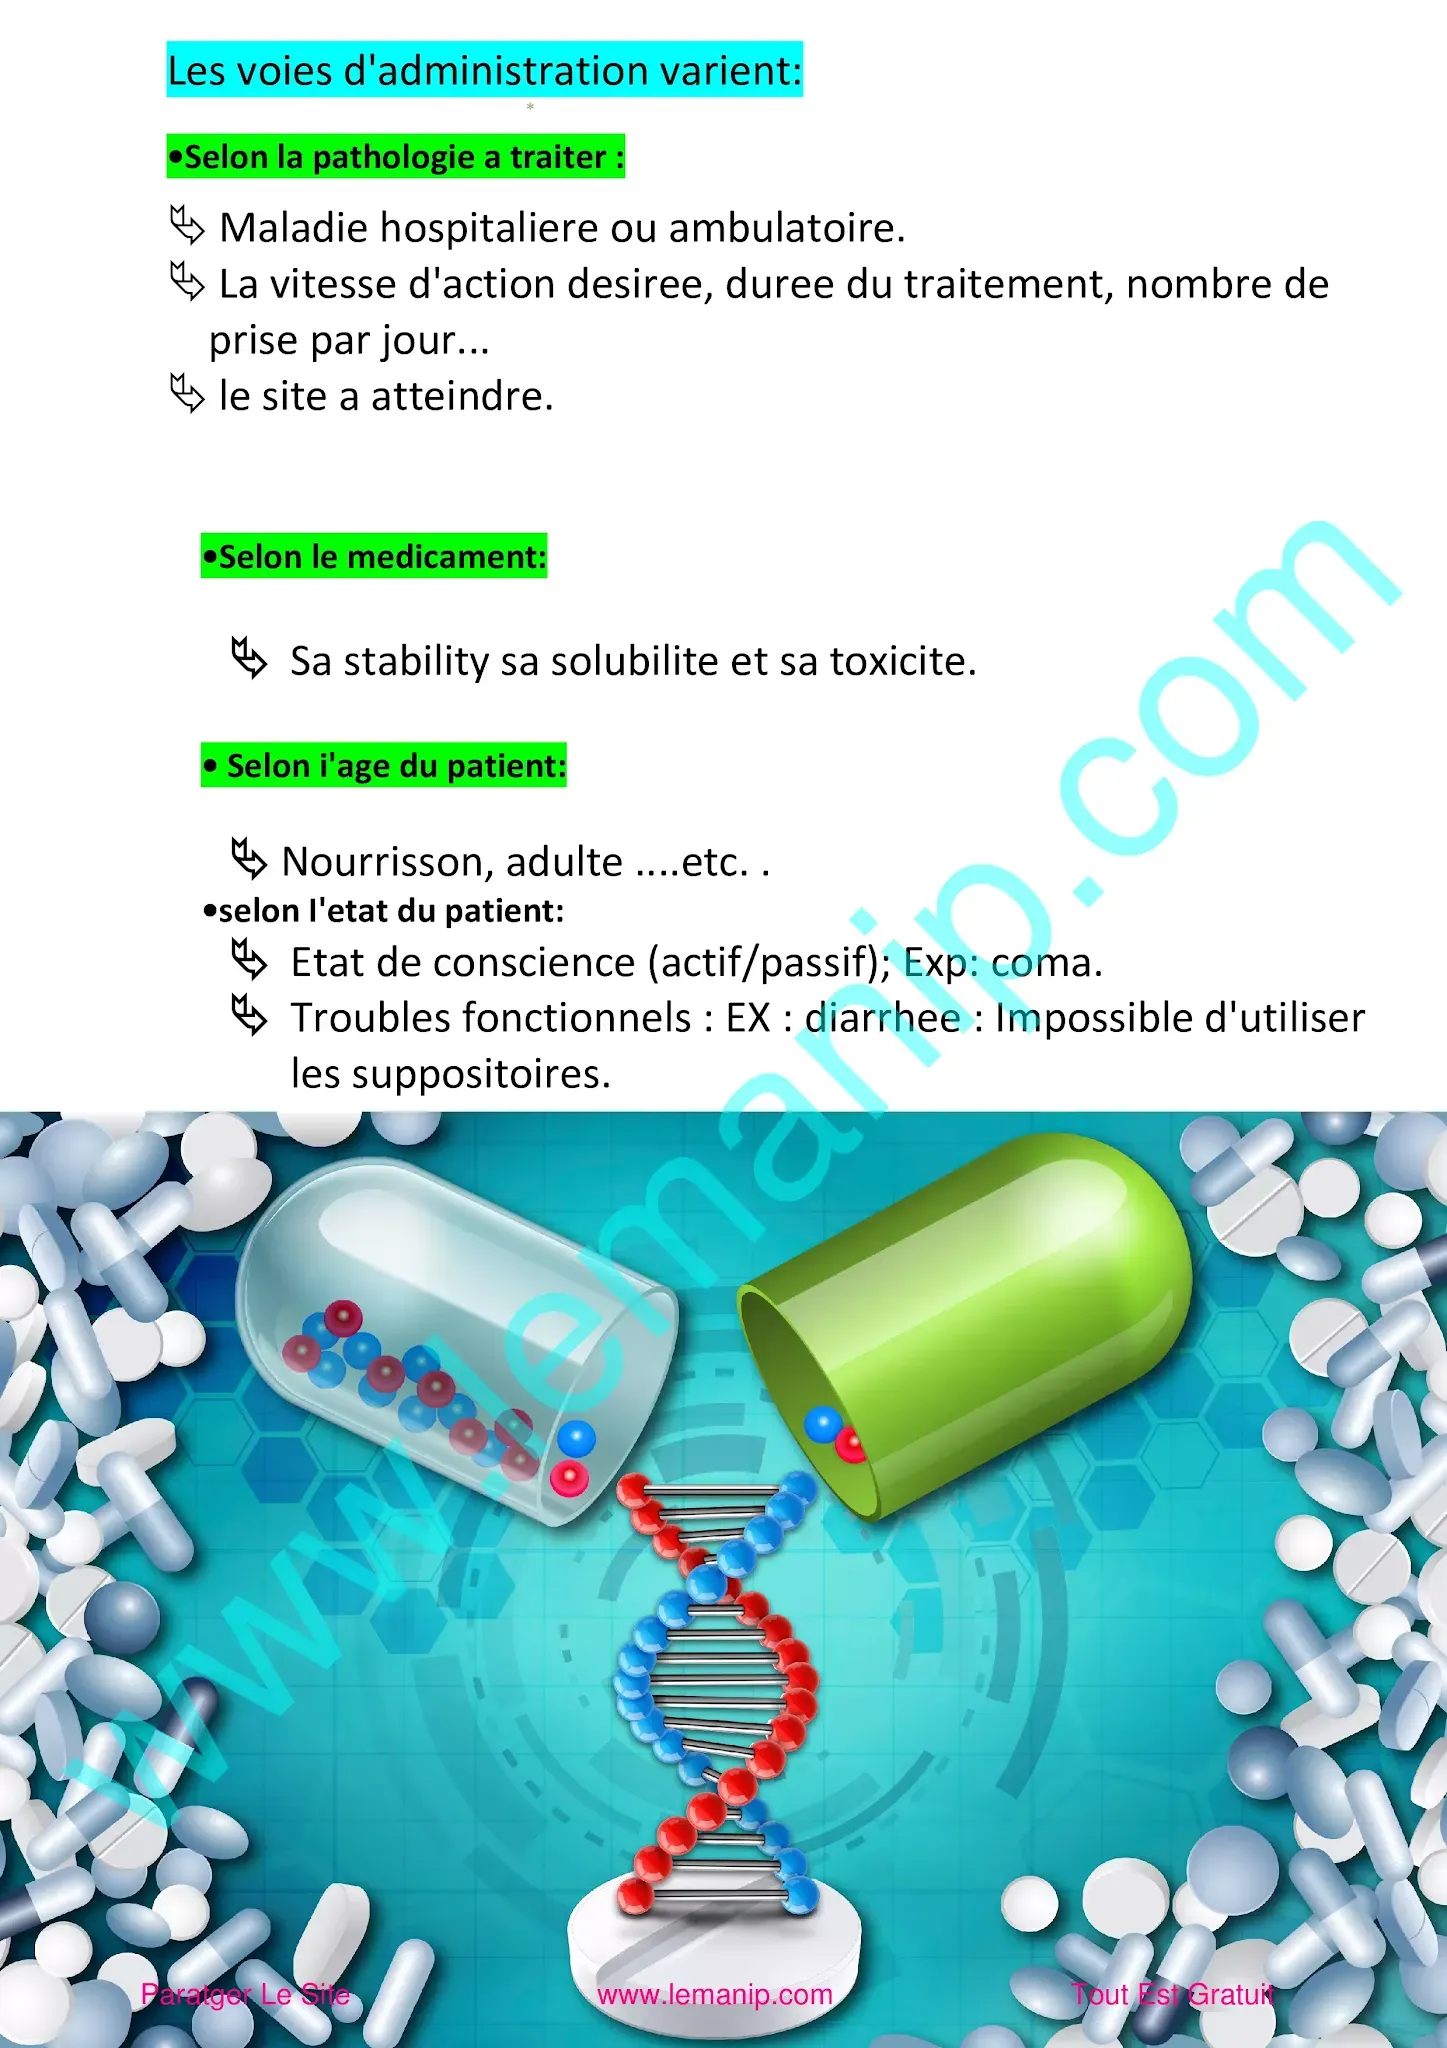 6: Formes pharmaceutiques d'administration des médicaments